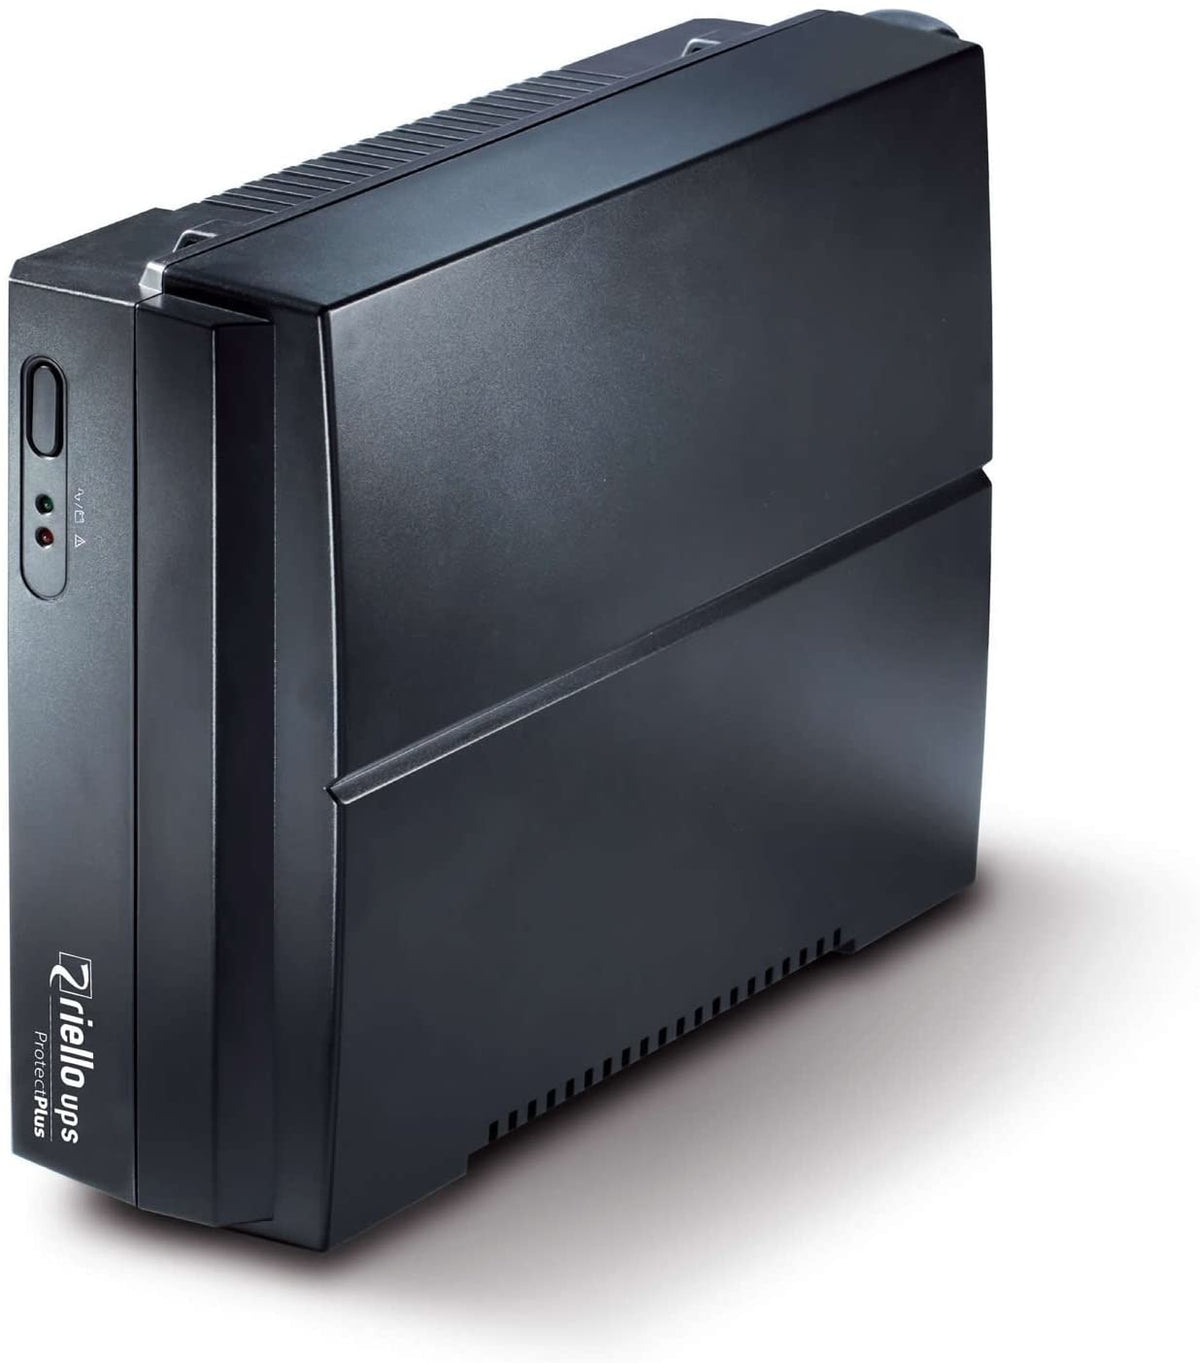 Riello UPS Protect Plus PRP 850 - UPS - AC 220-240 V - 480 Watt - 850 VA - conectores de saída: 2 - preto